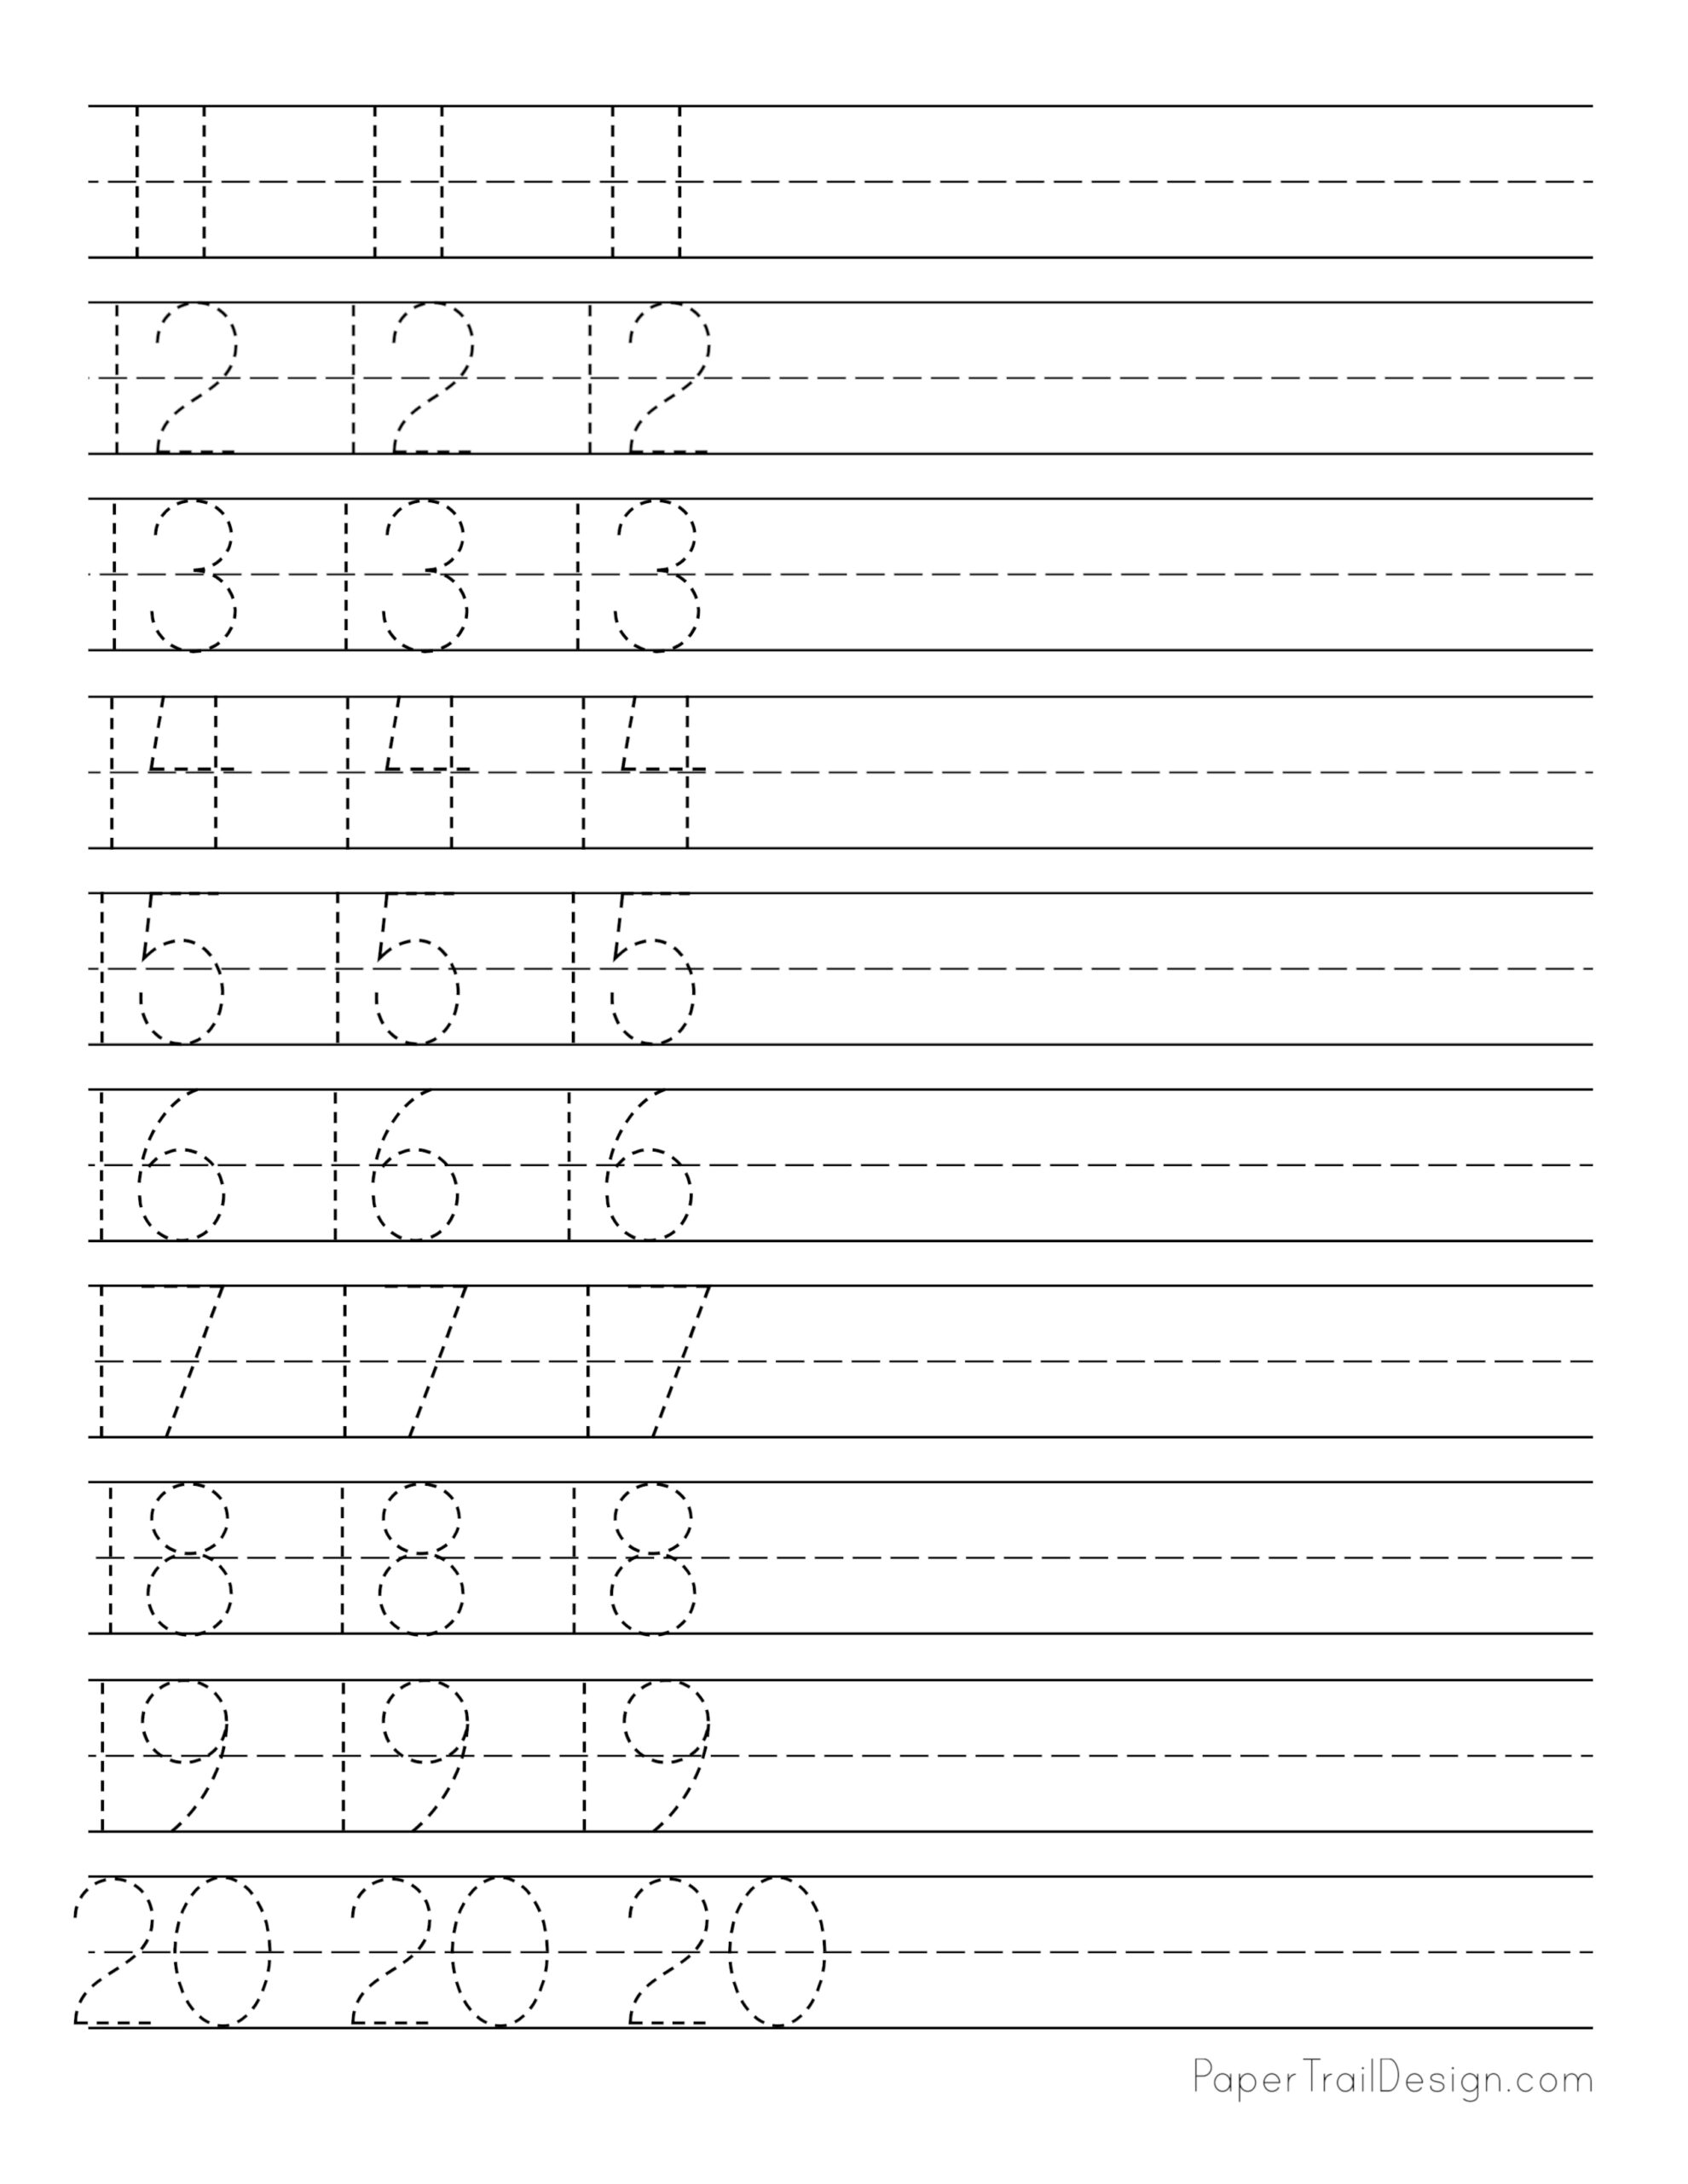 printable-numbers-11-20-worksheet